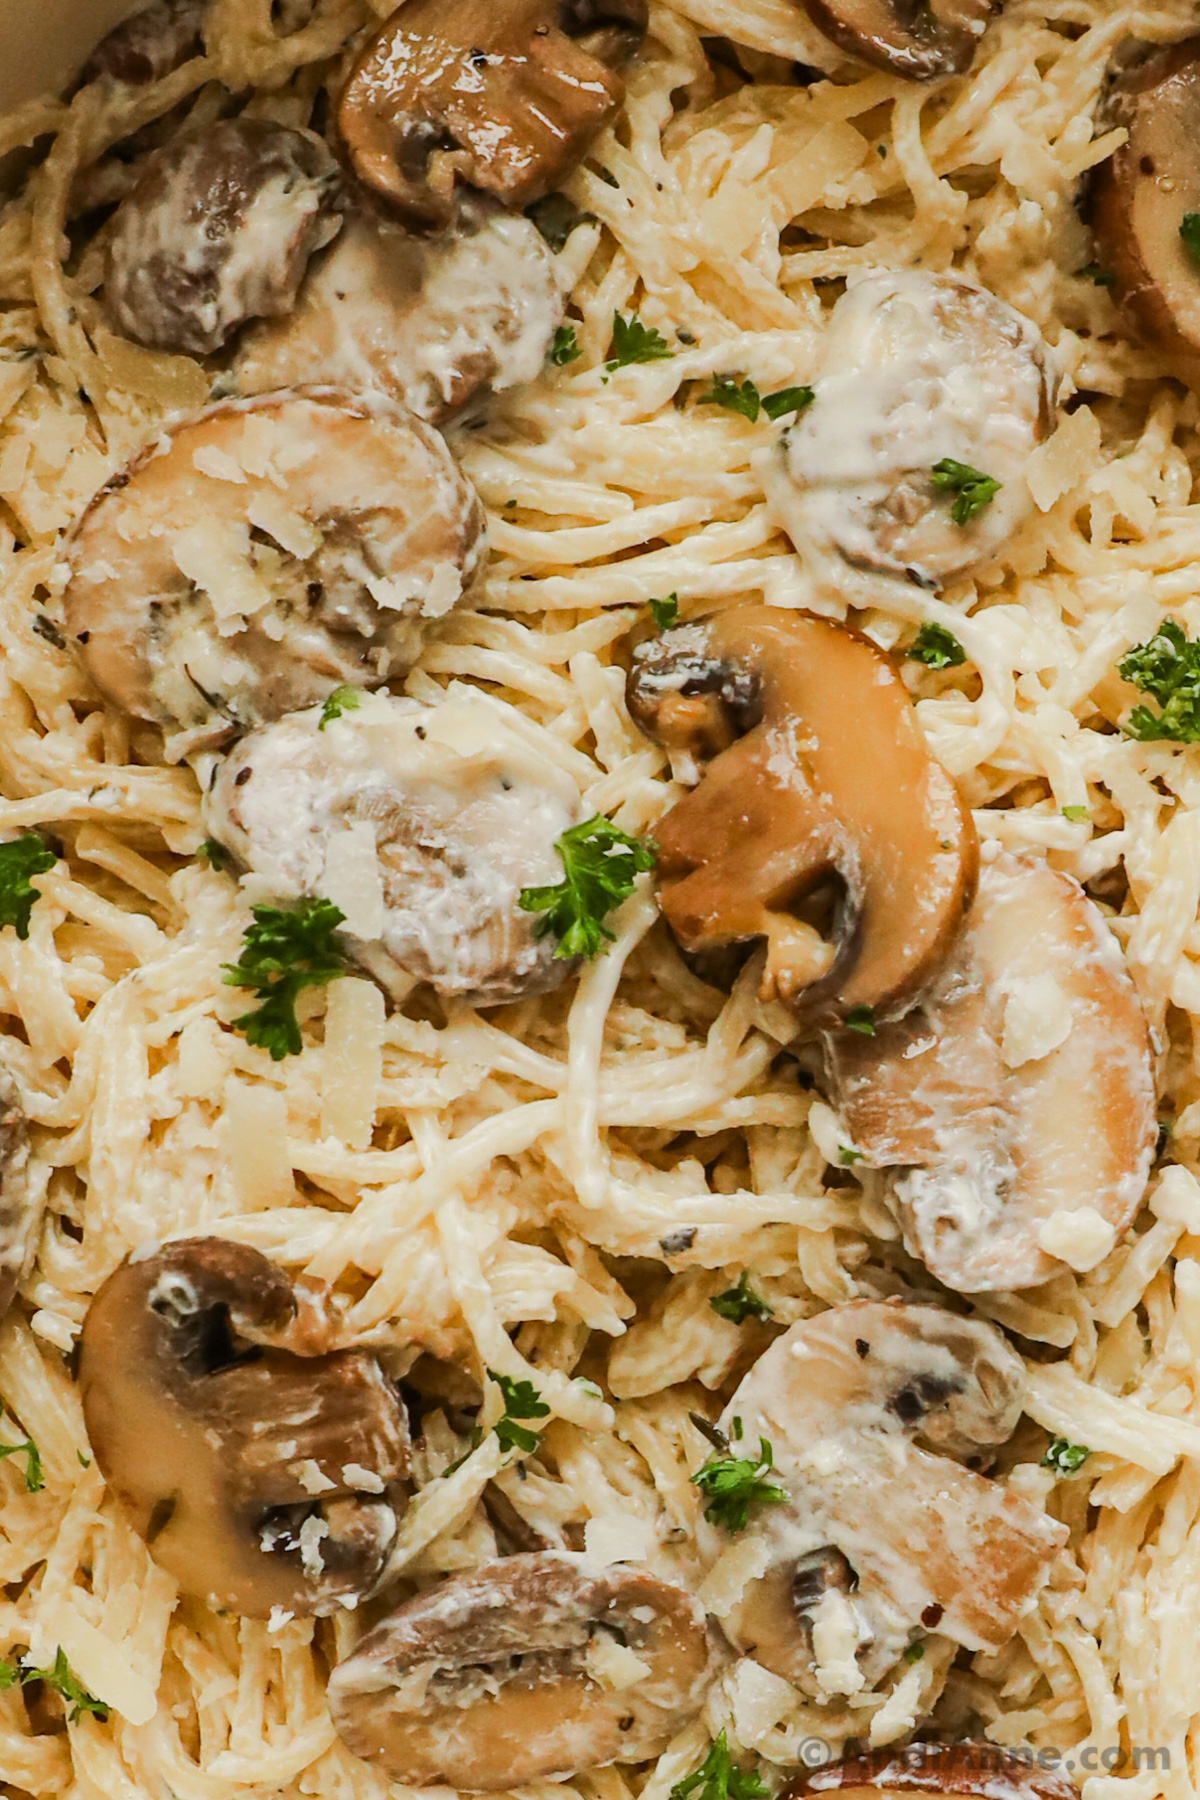 Close up of mushrooms and pasta noodles in creamy mushroom pasta recipe.